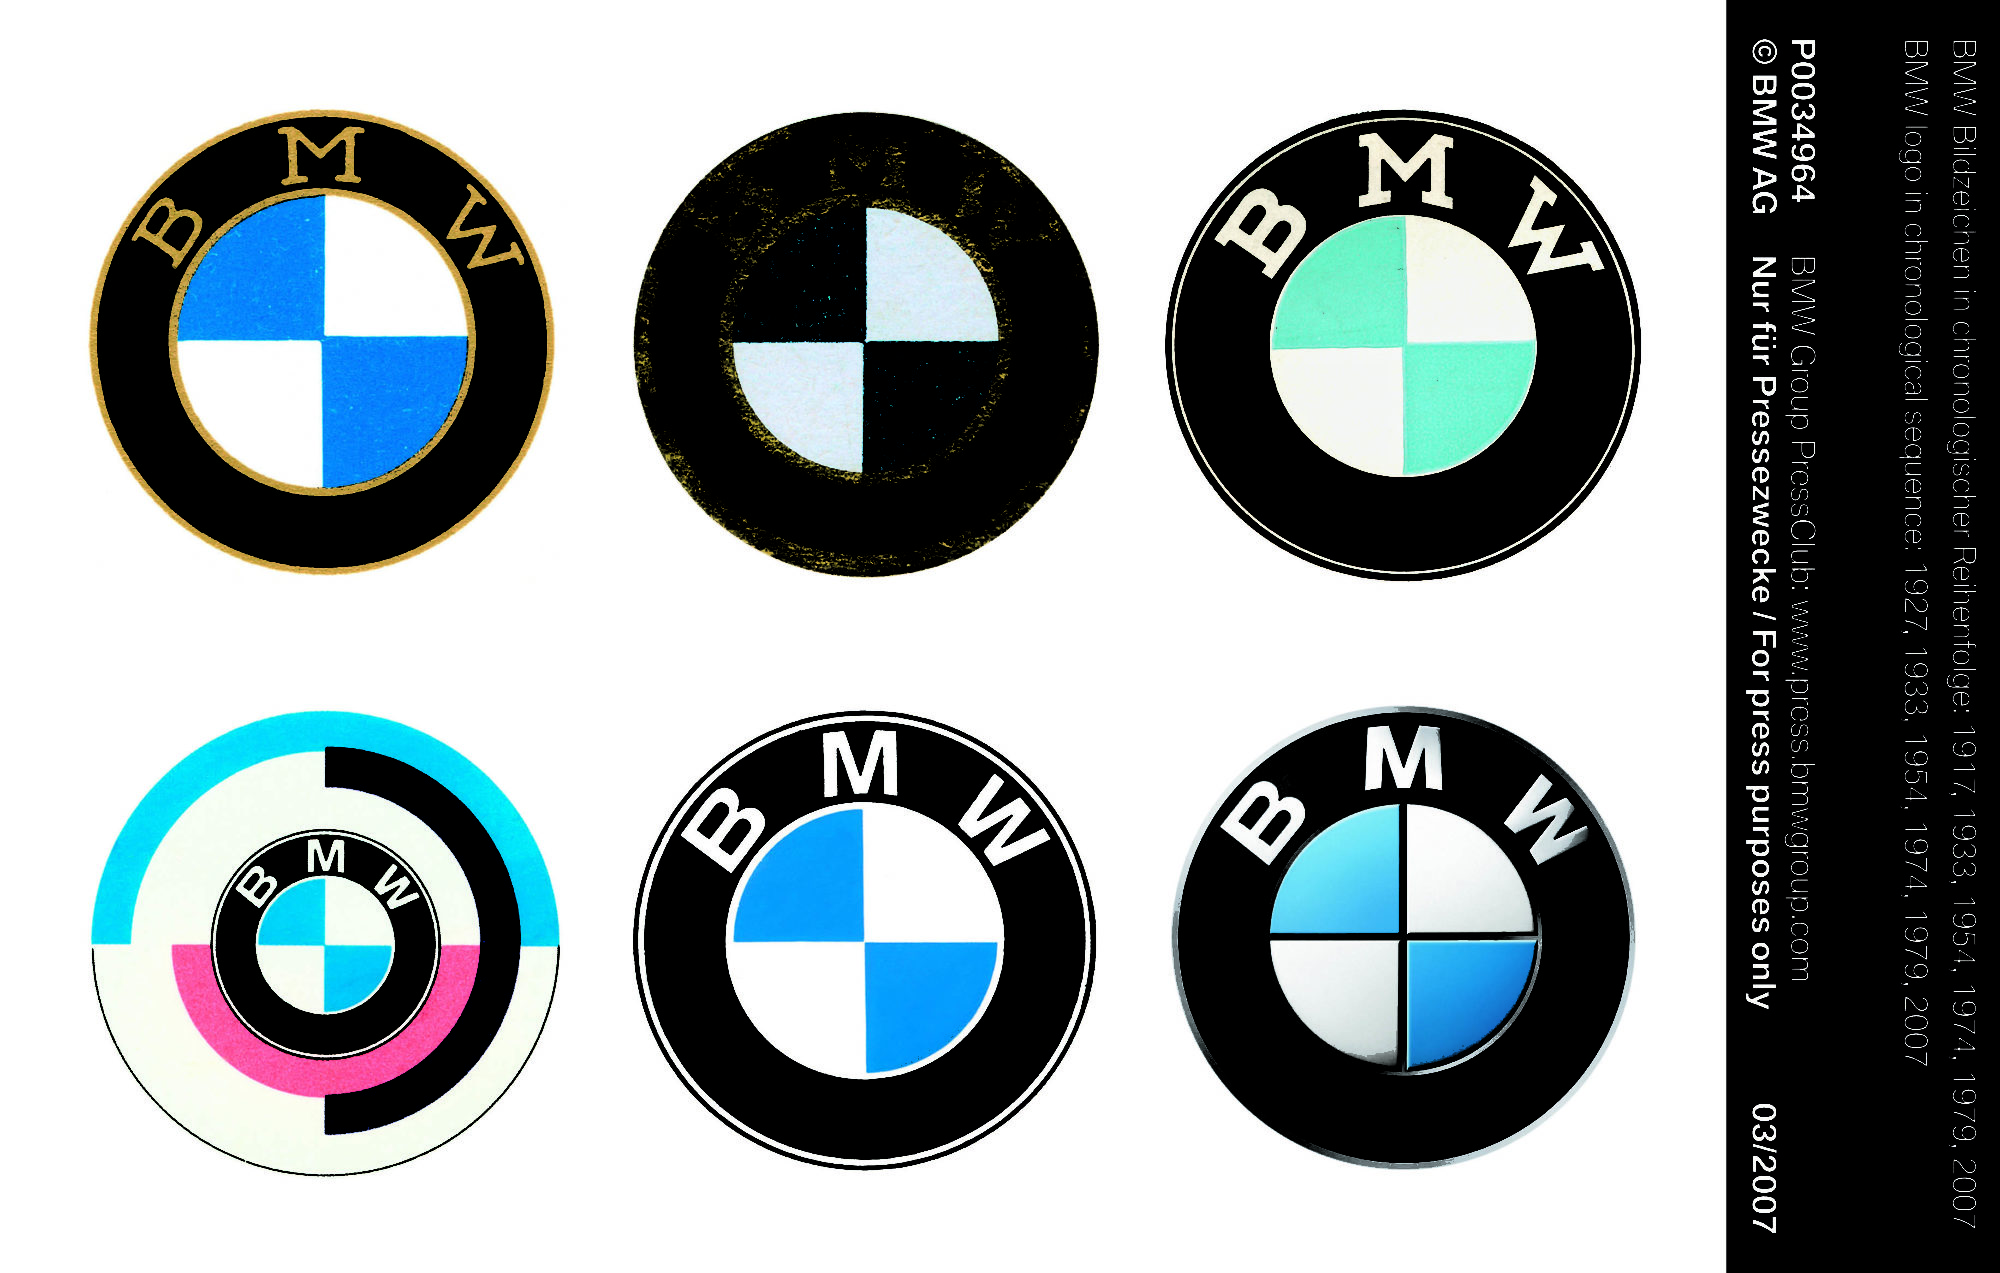 L'évolution du logo BMW dans le temps